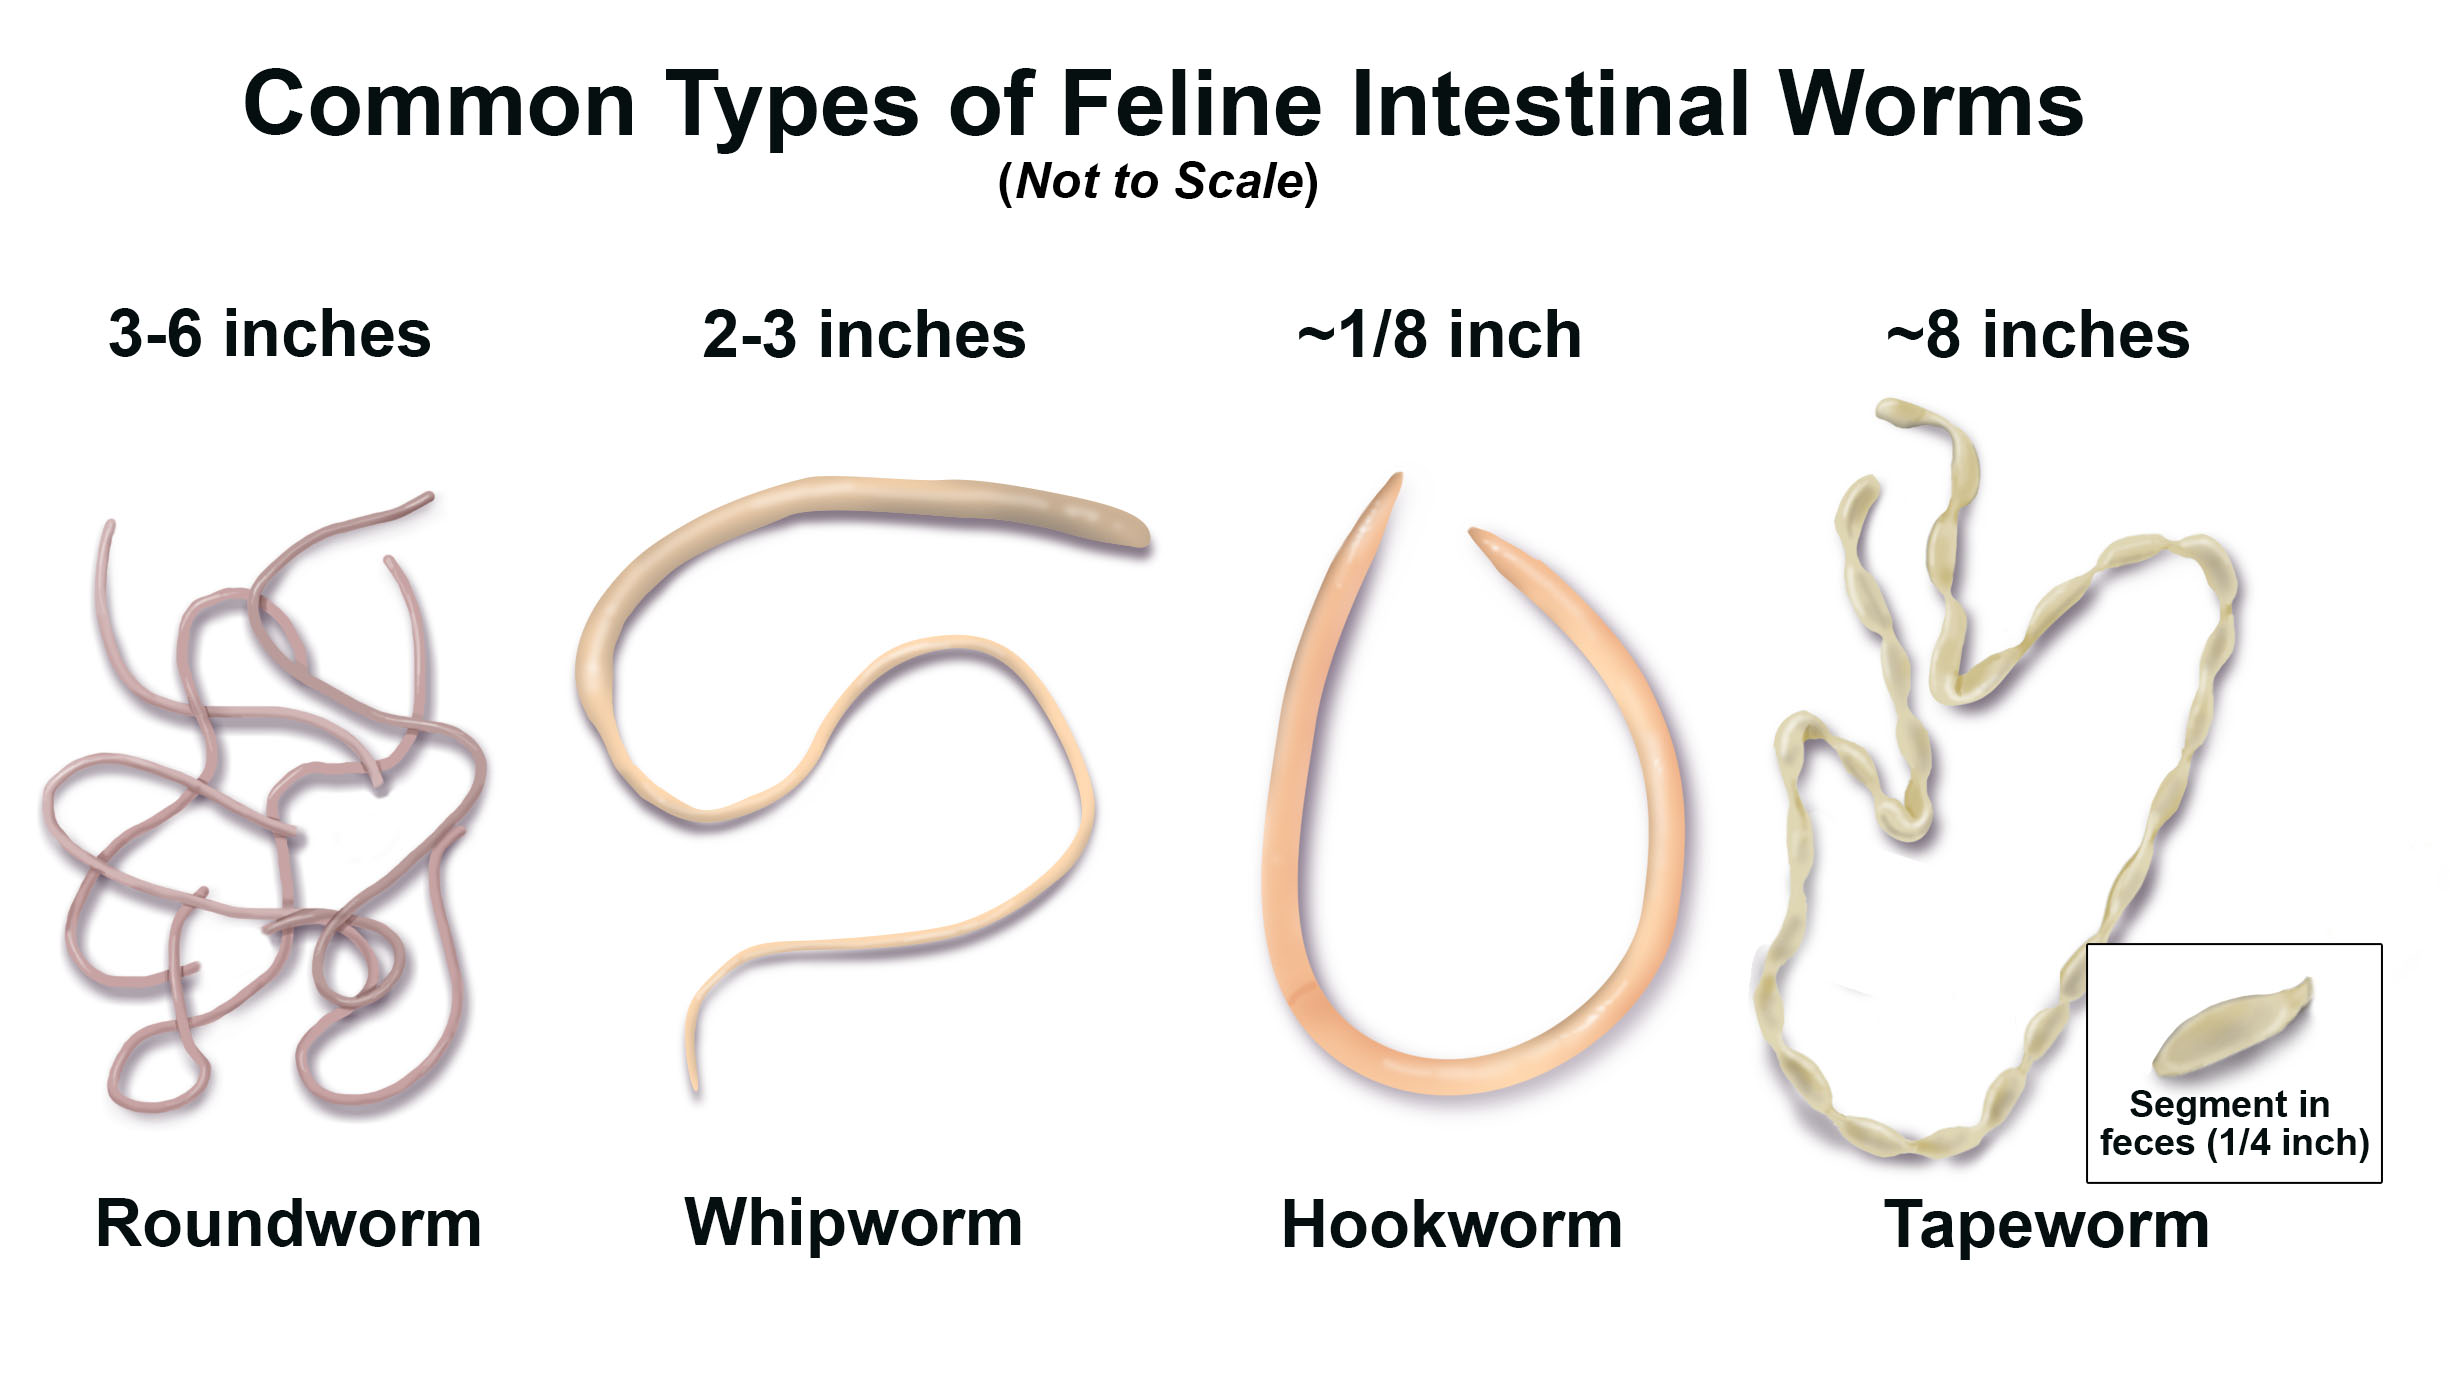 A pinworms és a roundworms rövid leírása